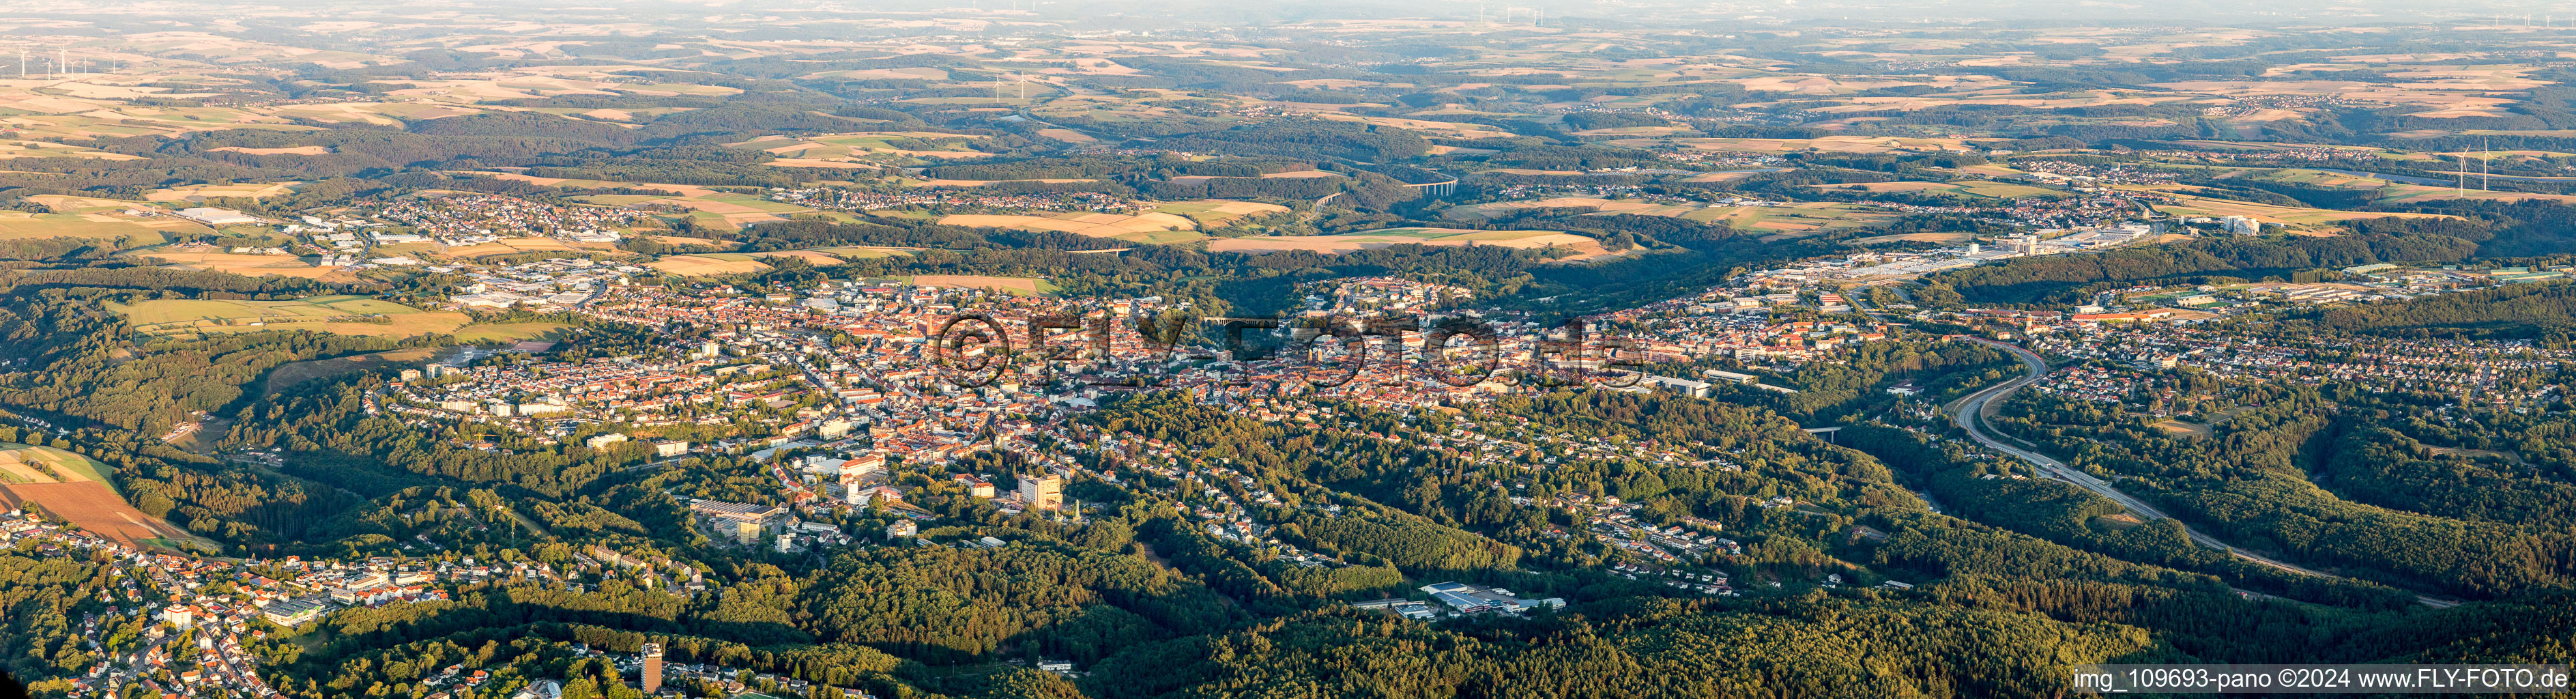 Luftbild von Panorama in Pirmasens im Bundesland Rheinland-Pfalz, Deutschland